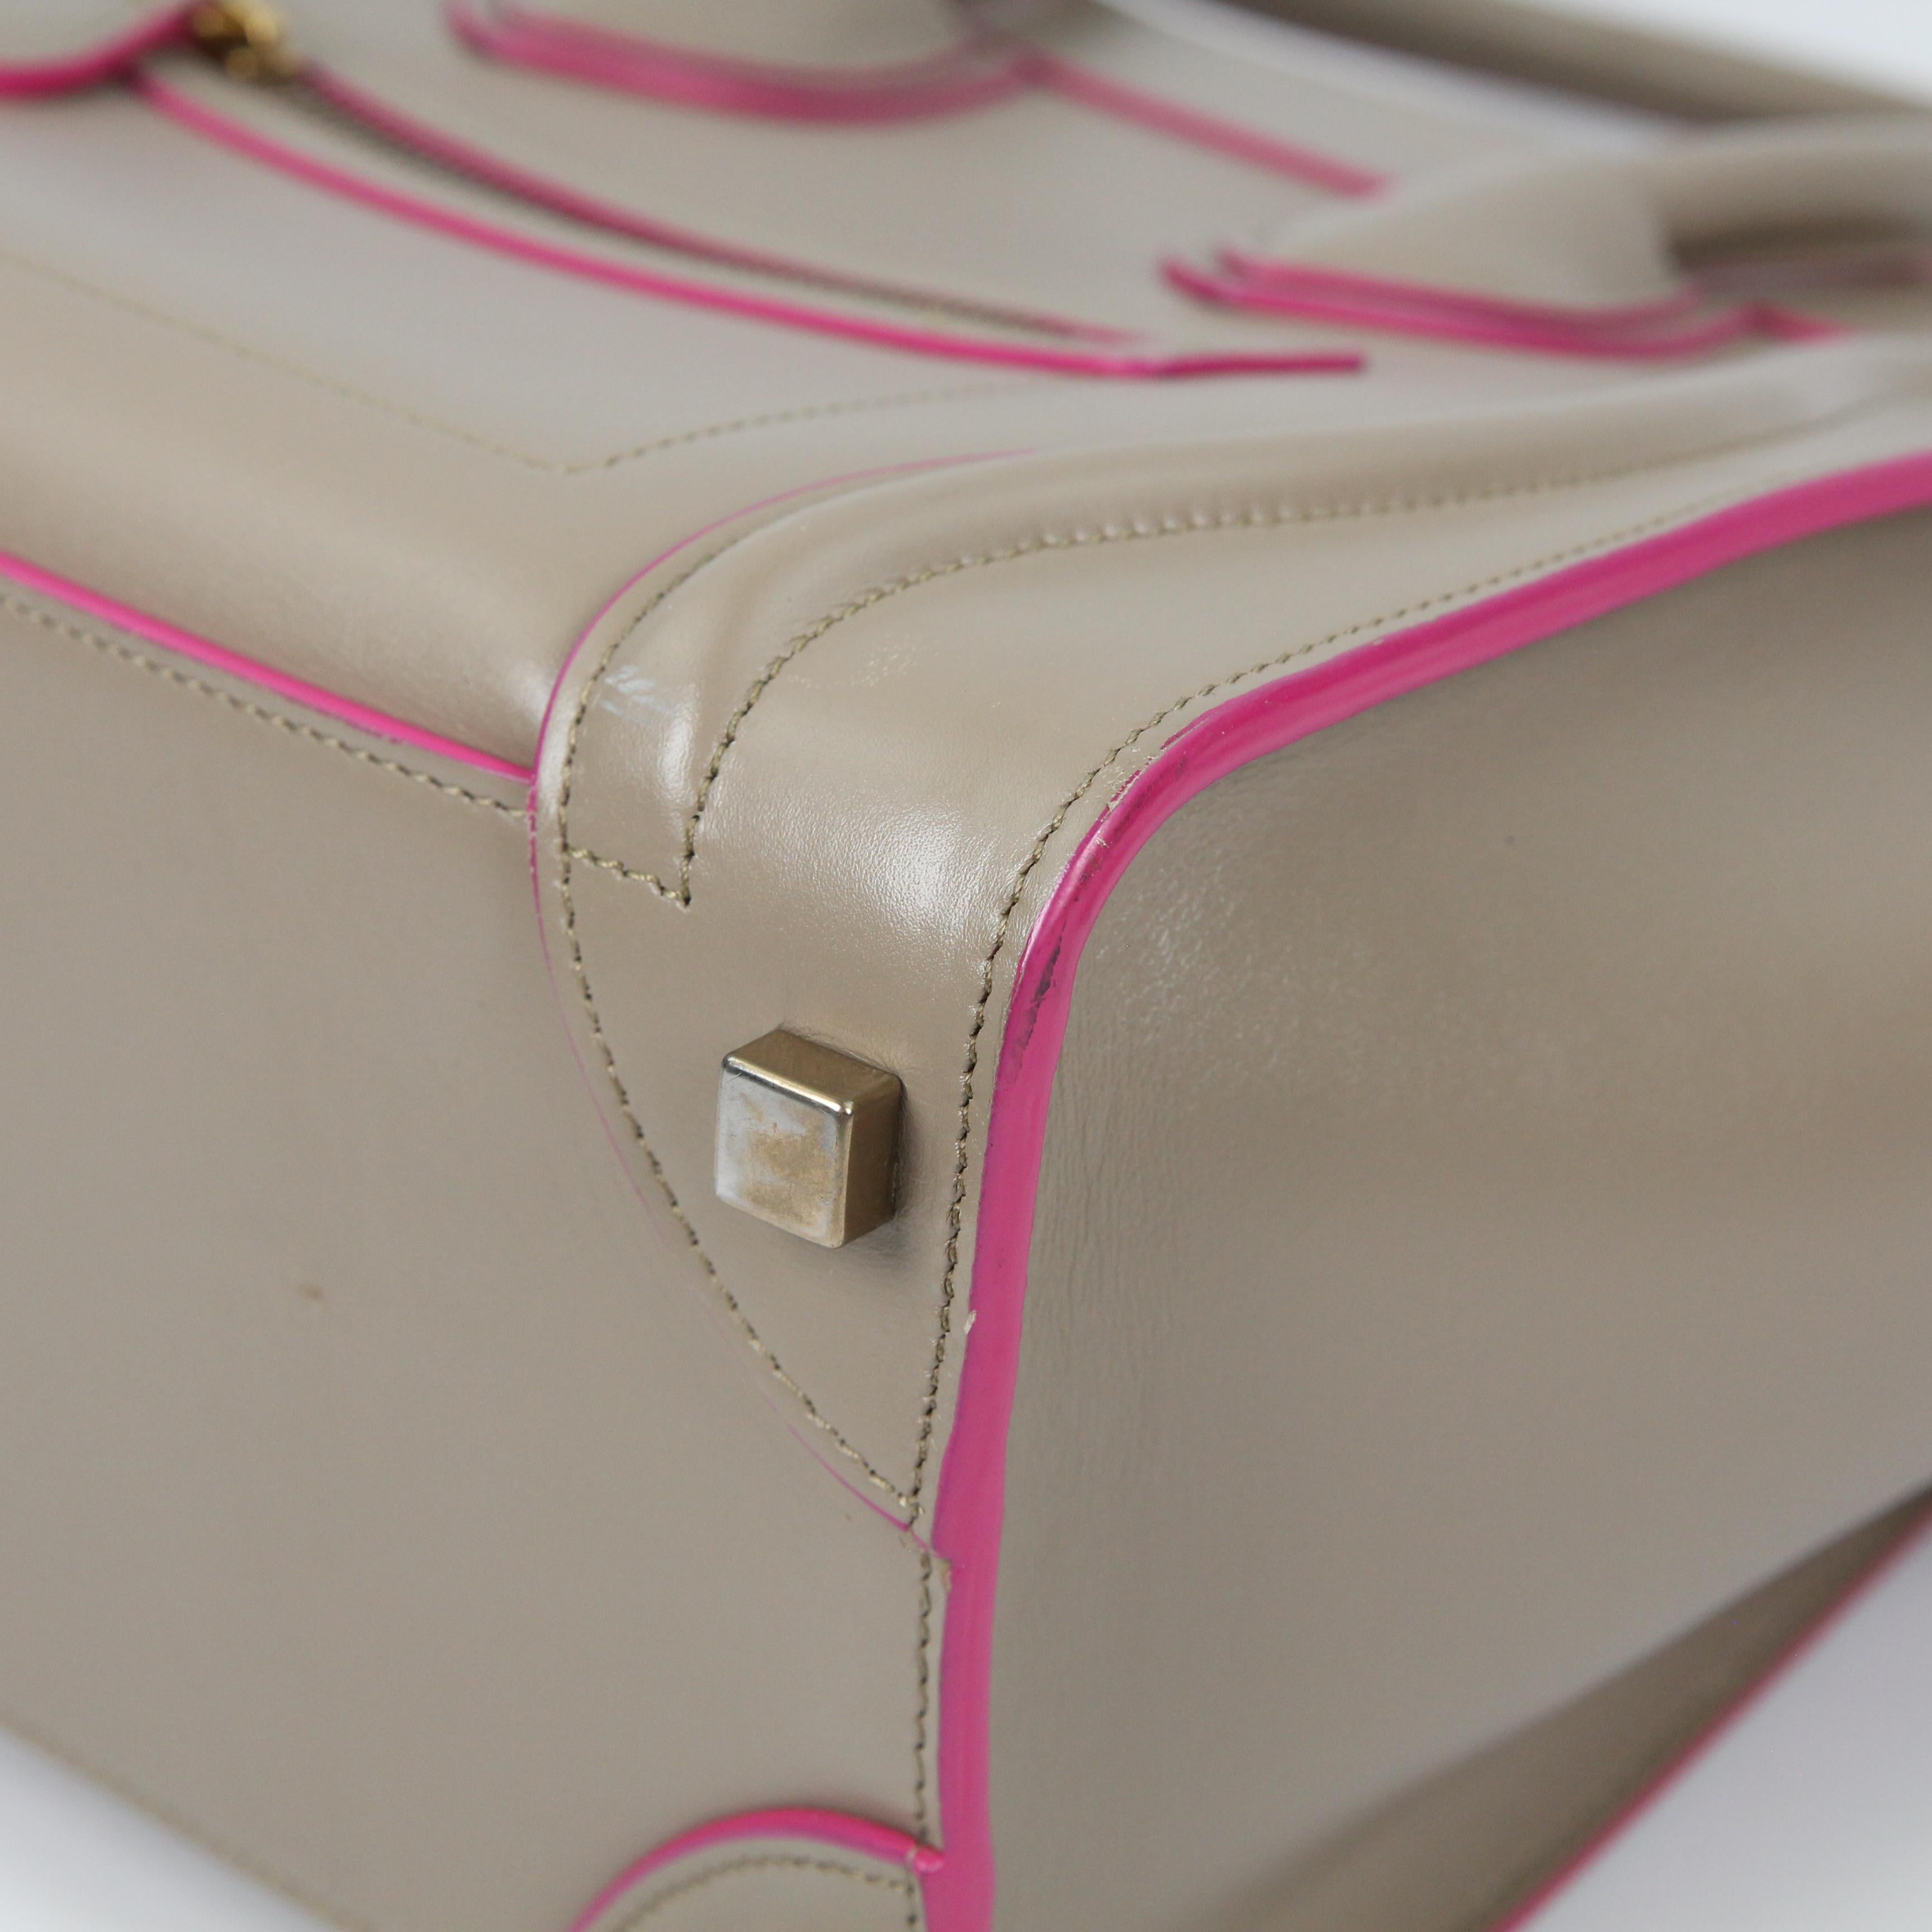 Celine Luggage leather handbag For Sale 2